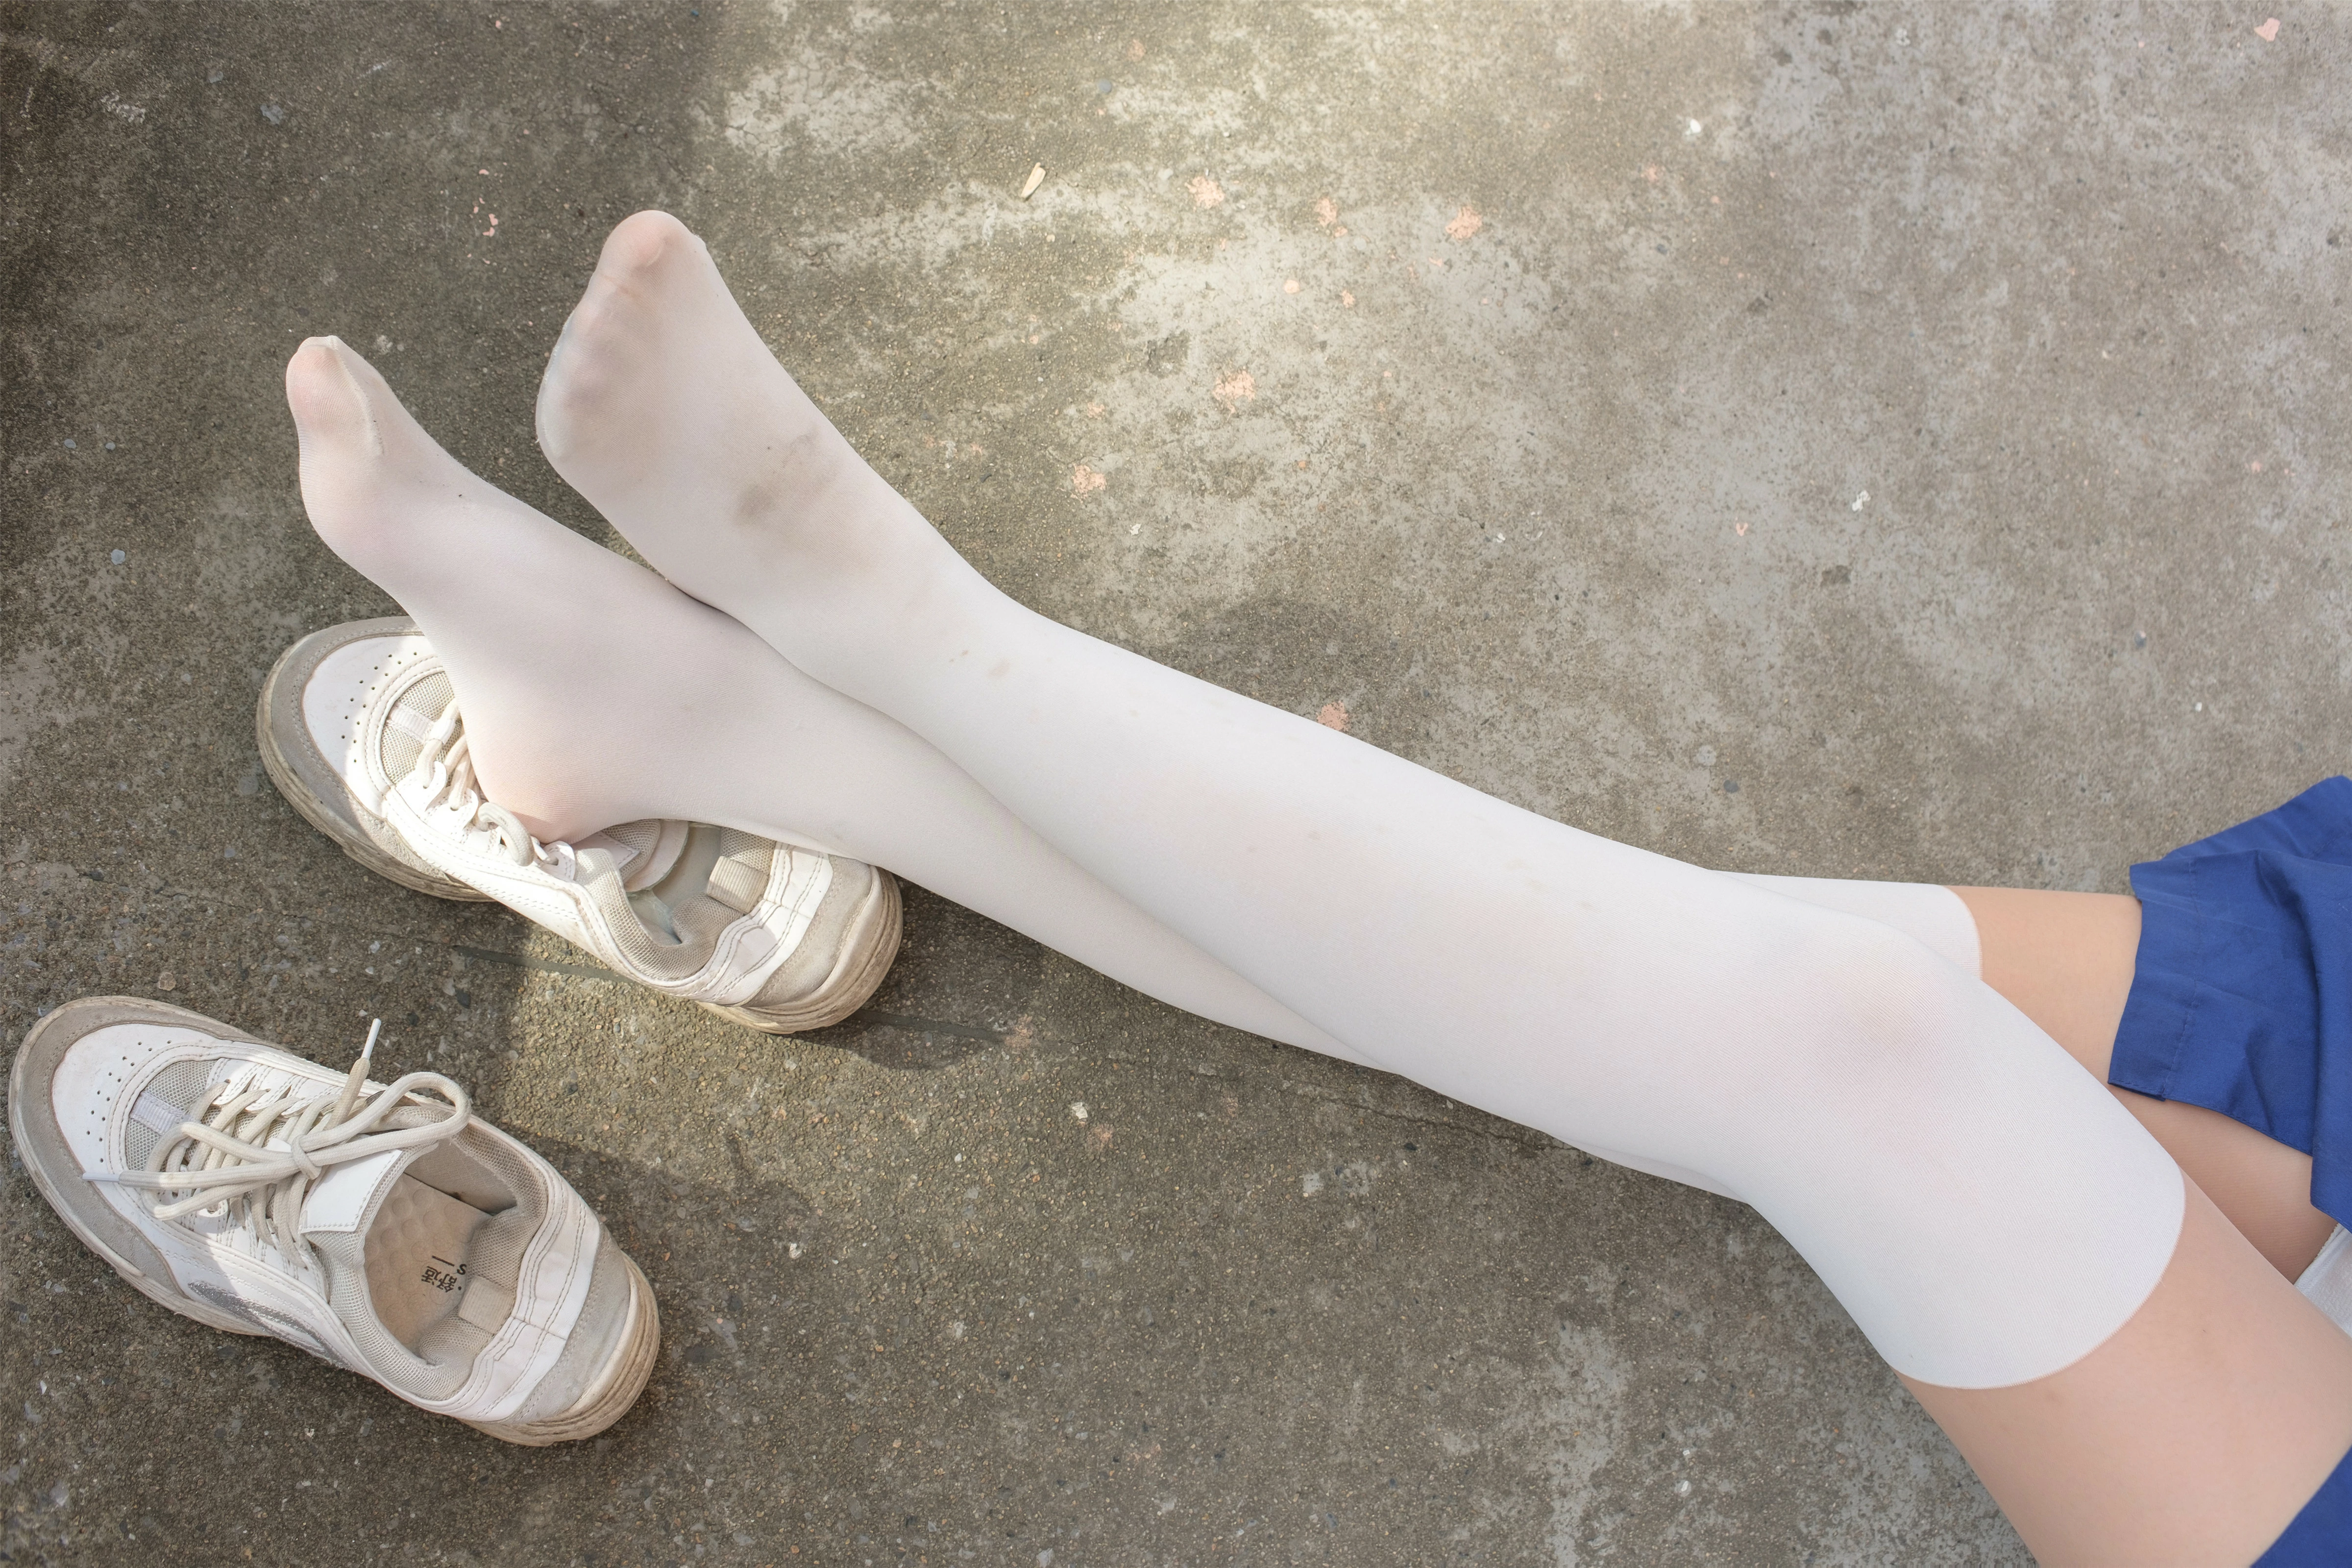 [森萝财团]BETA-018 性感小萝莉 蓝色连身衣加白色丝袜美腿玉足私房写真集,